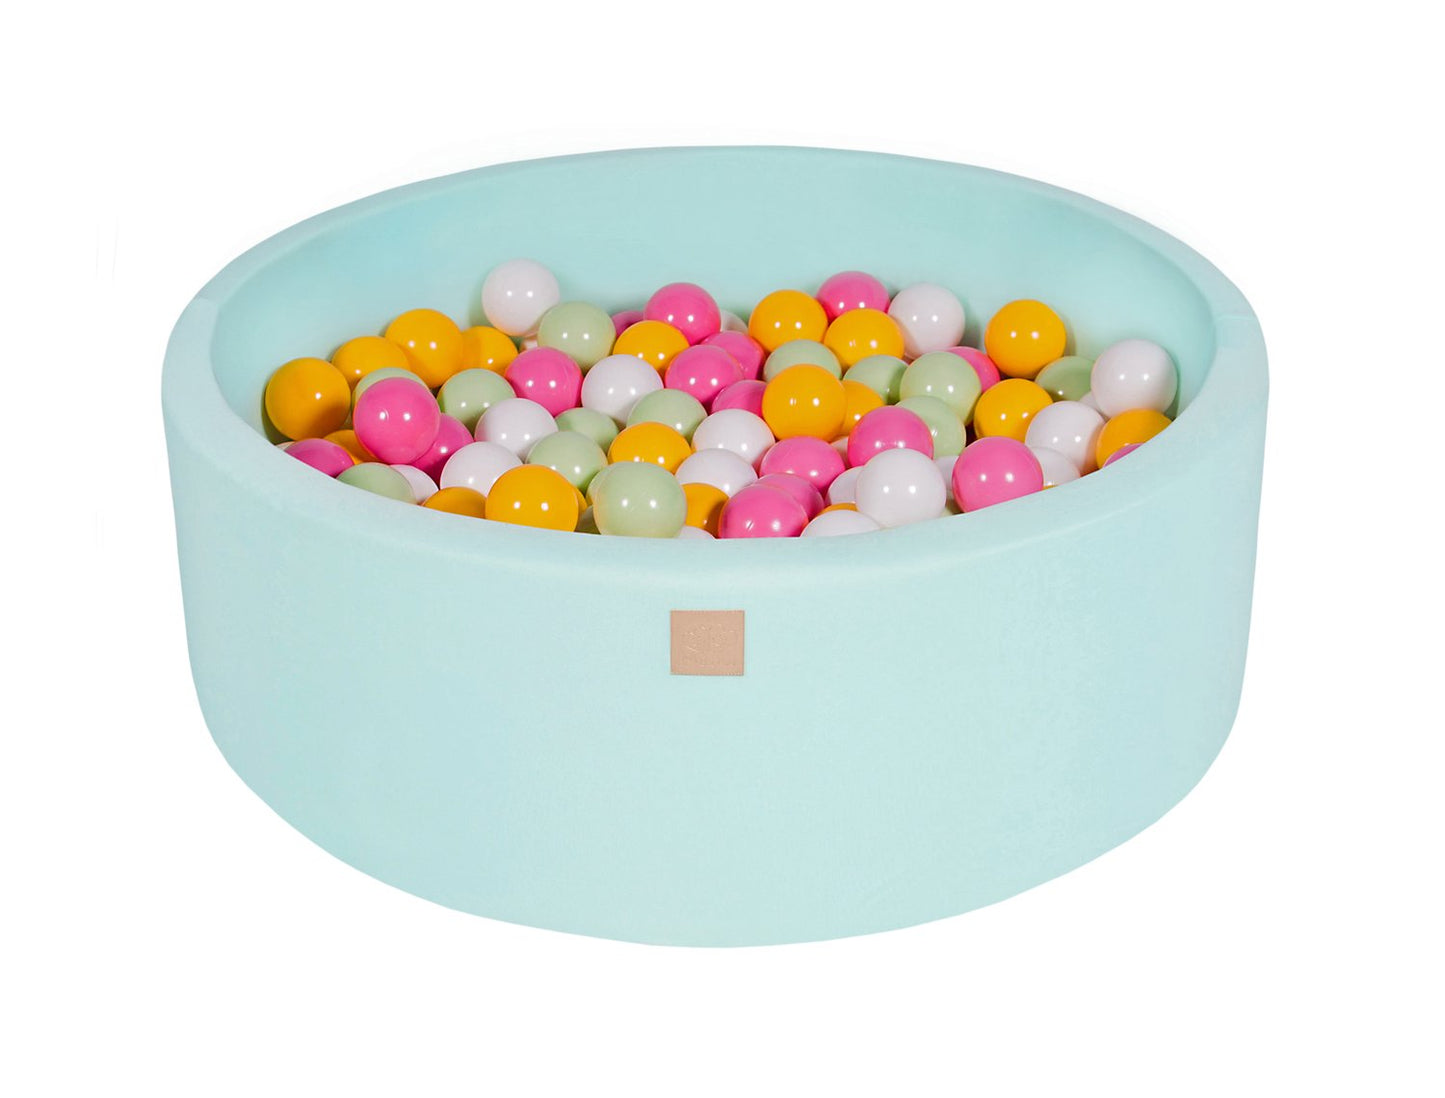 Ballenbak KATOEN Mint - 90x30 incl. 200 ballen - Wit, Licht Groen, Licht Roze, Geel